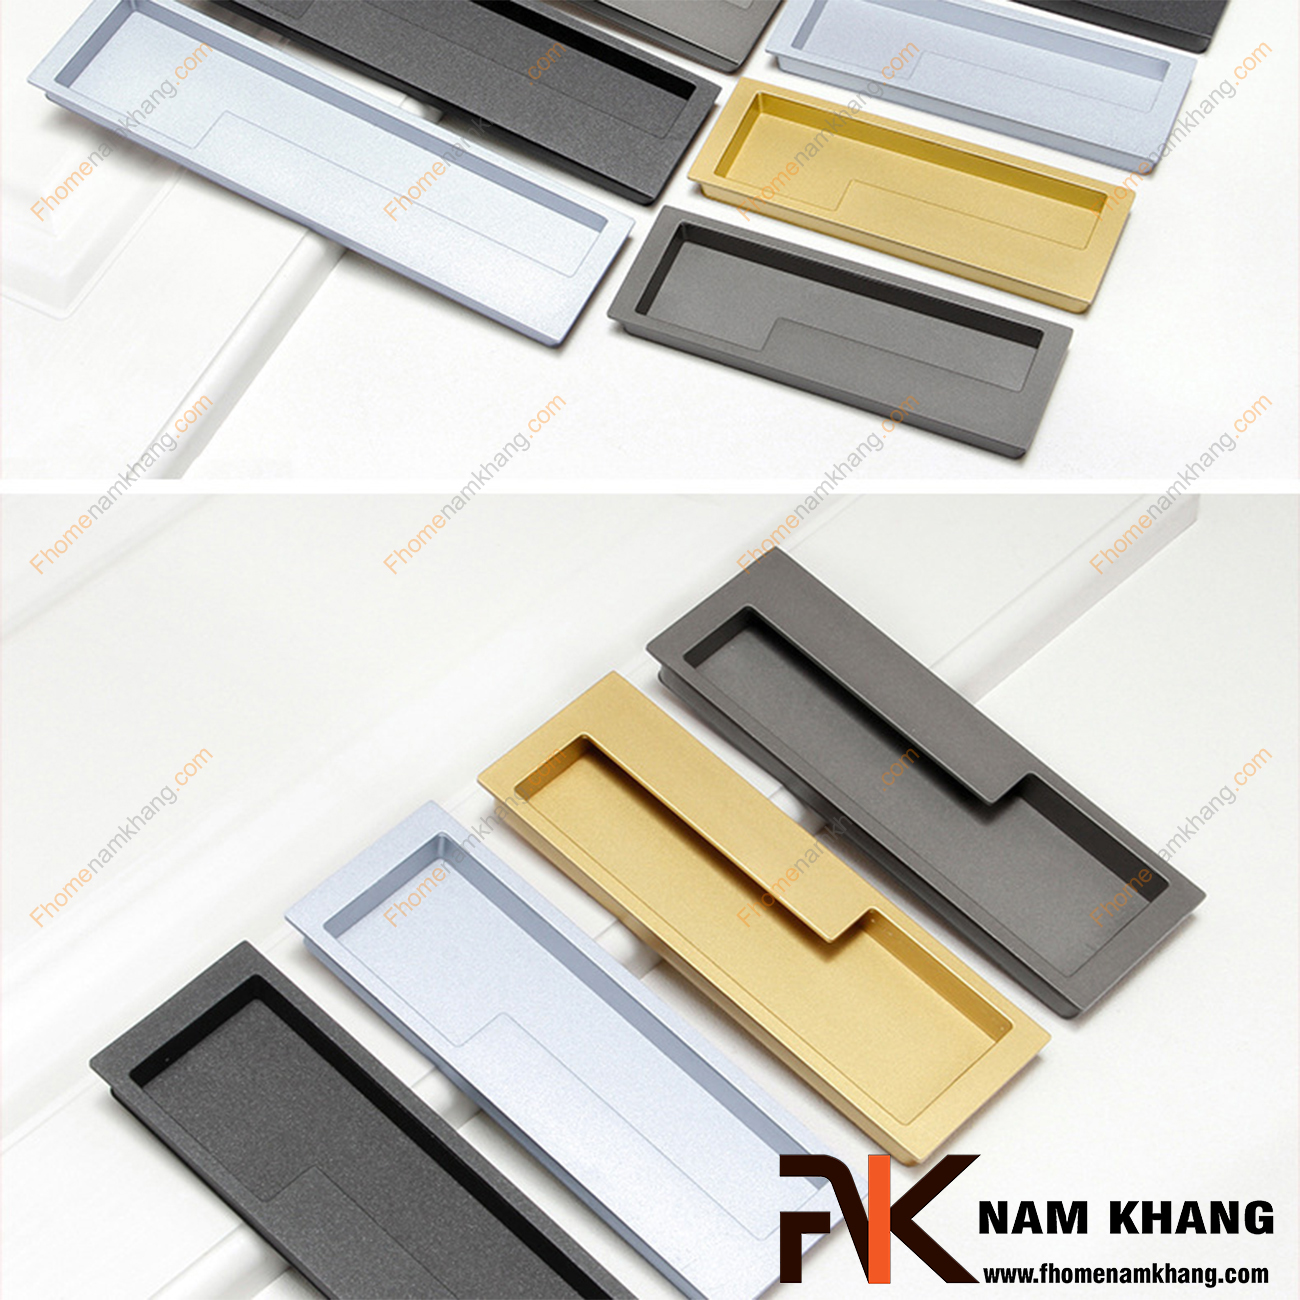 Tay nắm âm tủ màu xám NK438-128X là loại tay nắm chuyên dùng cho các loại tủ đặt ở những nơi có không gian hạn chế hoặc dùng để nâng cao tính thẫm mỹ của sản phẩm.